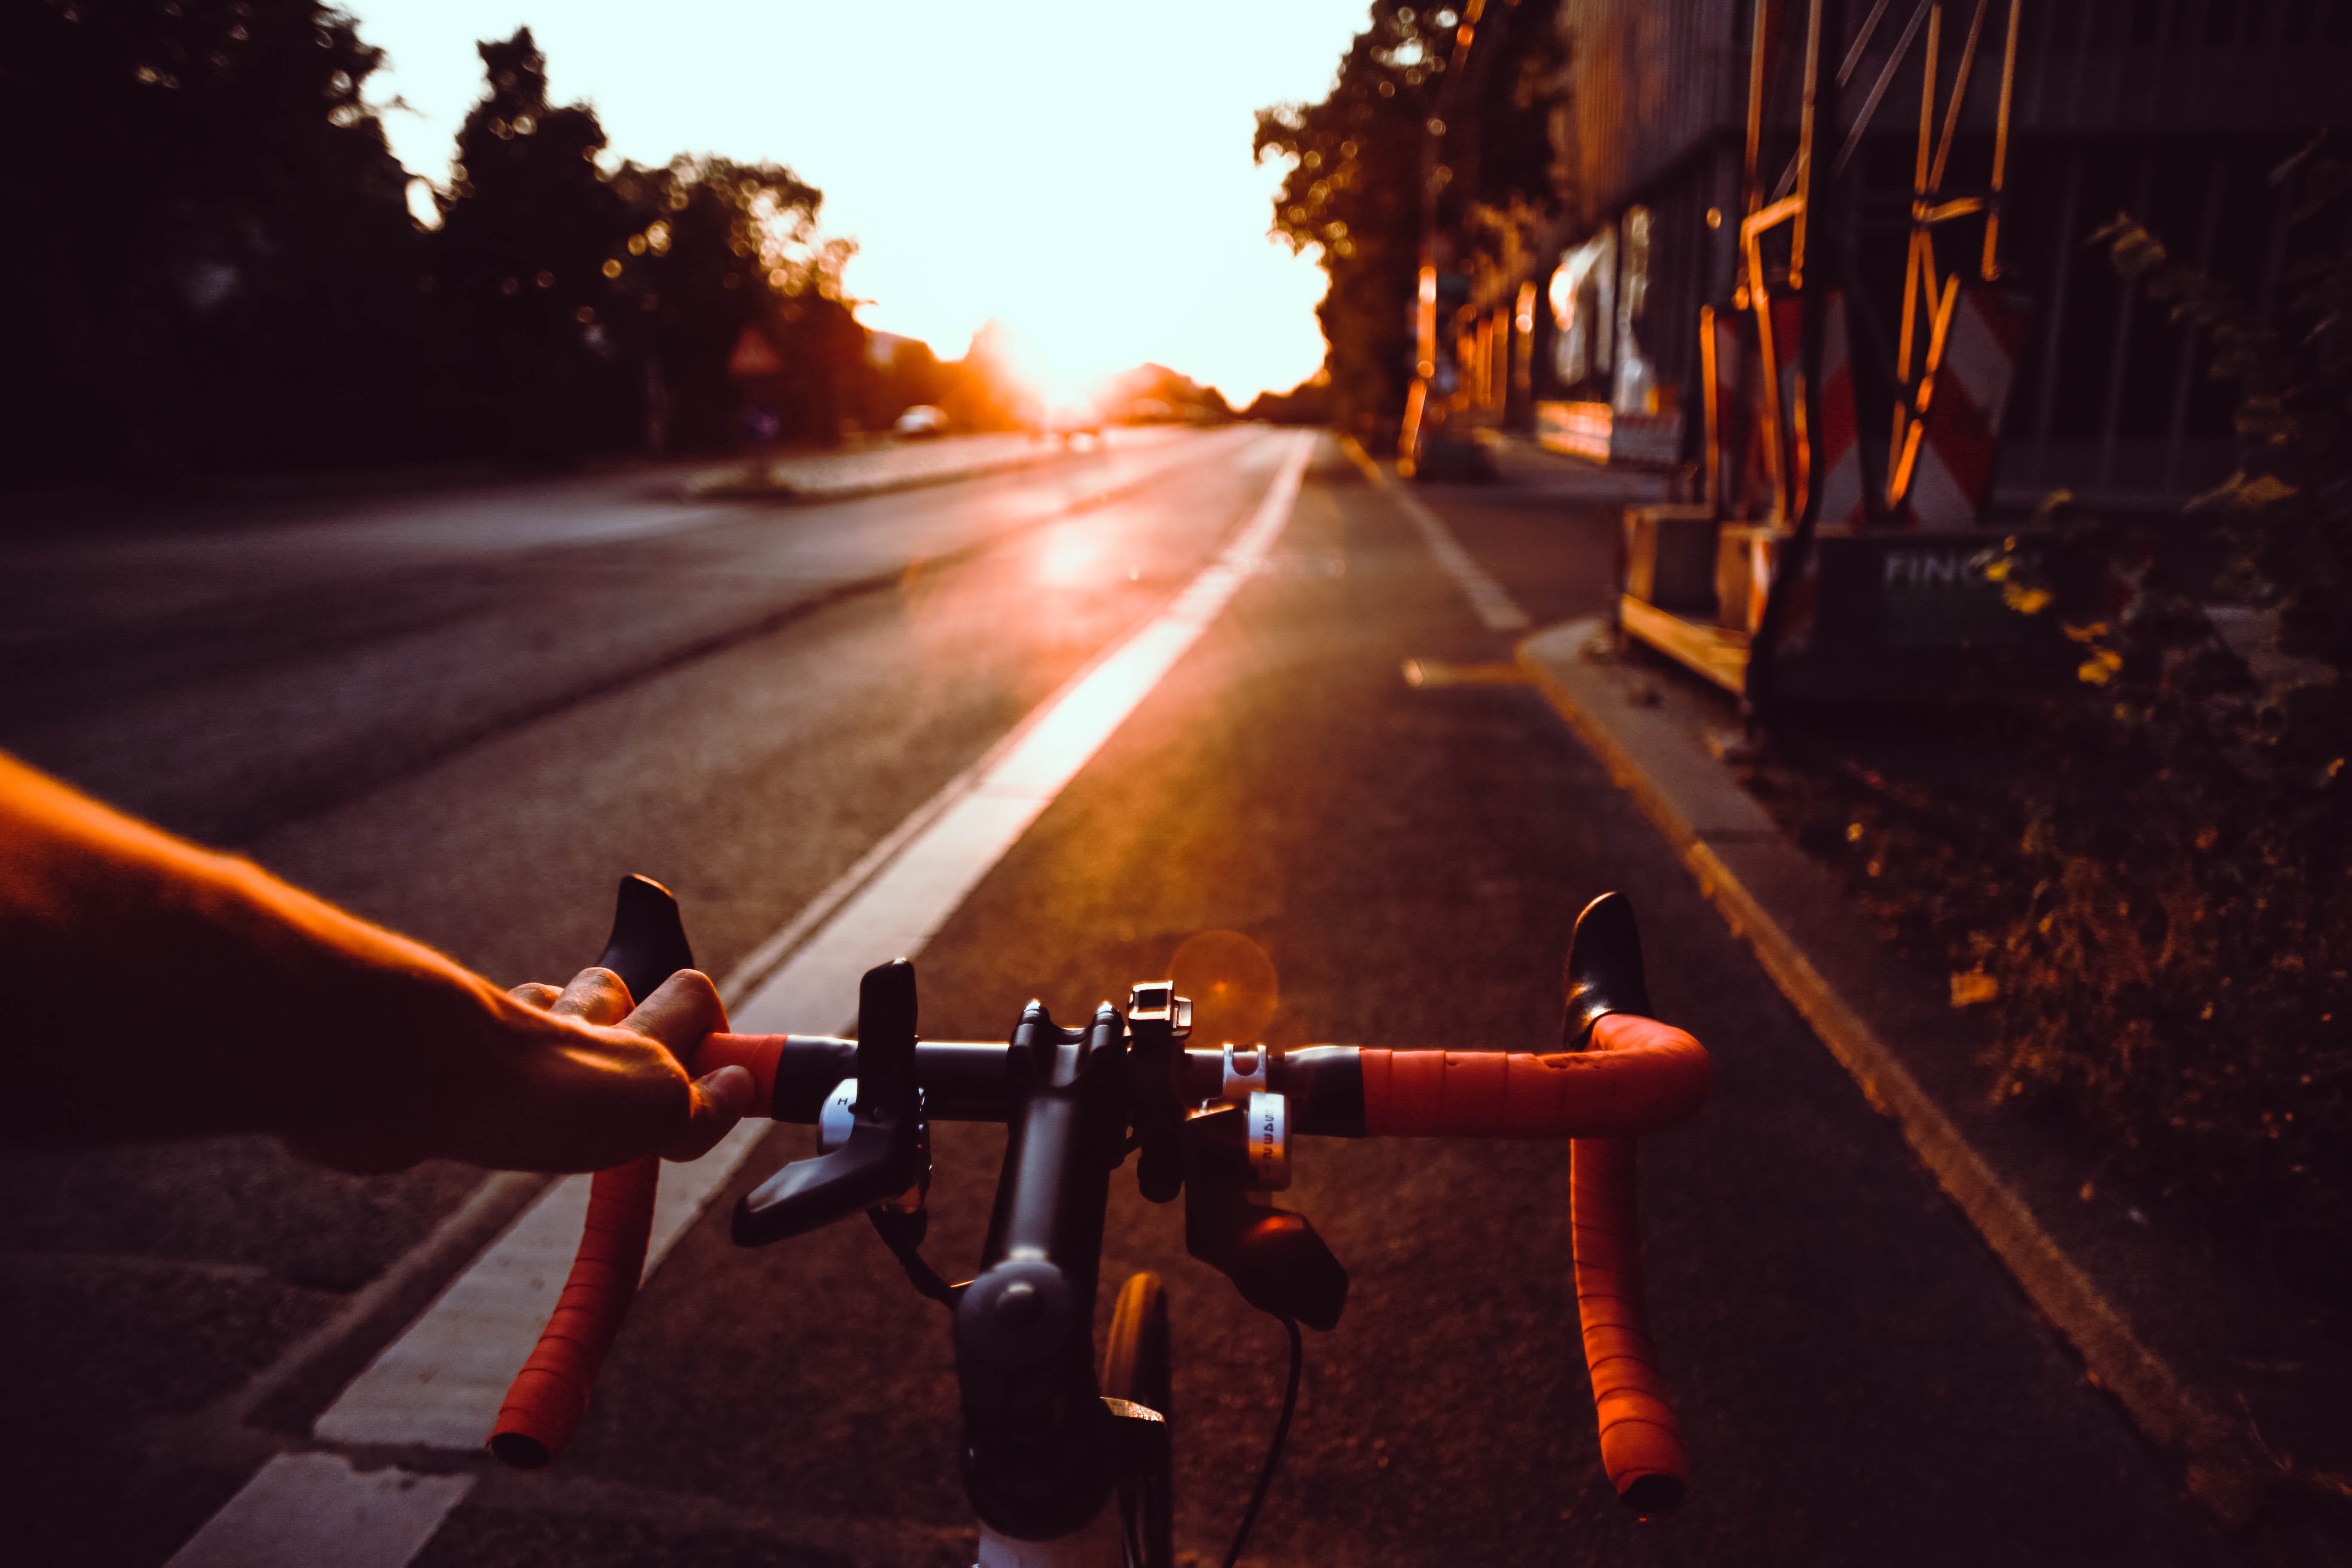 Het fietsstuur van een sportieve fiets met een hand aan het stuur. Ervoor het fietspad met bomen erlangs en de zon die opkomt. De sfeer is zomers.